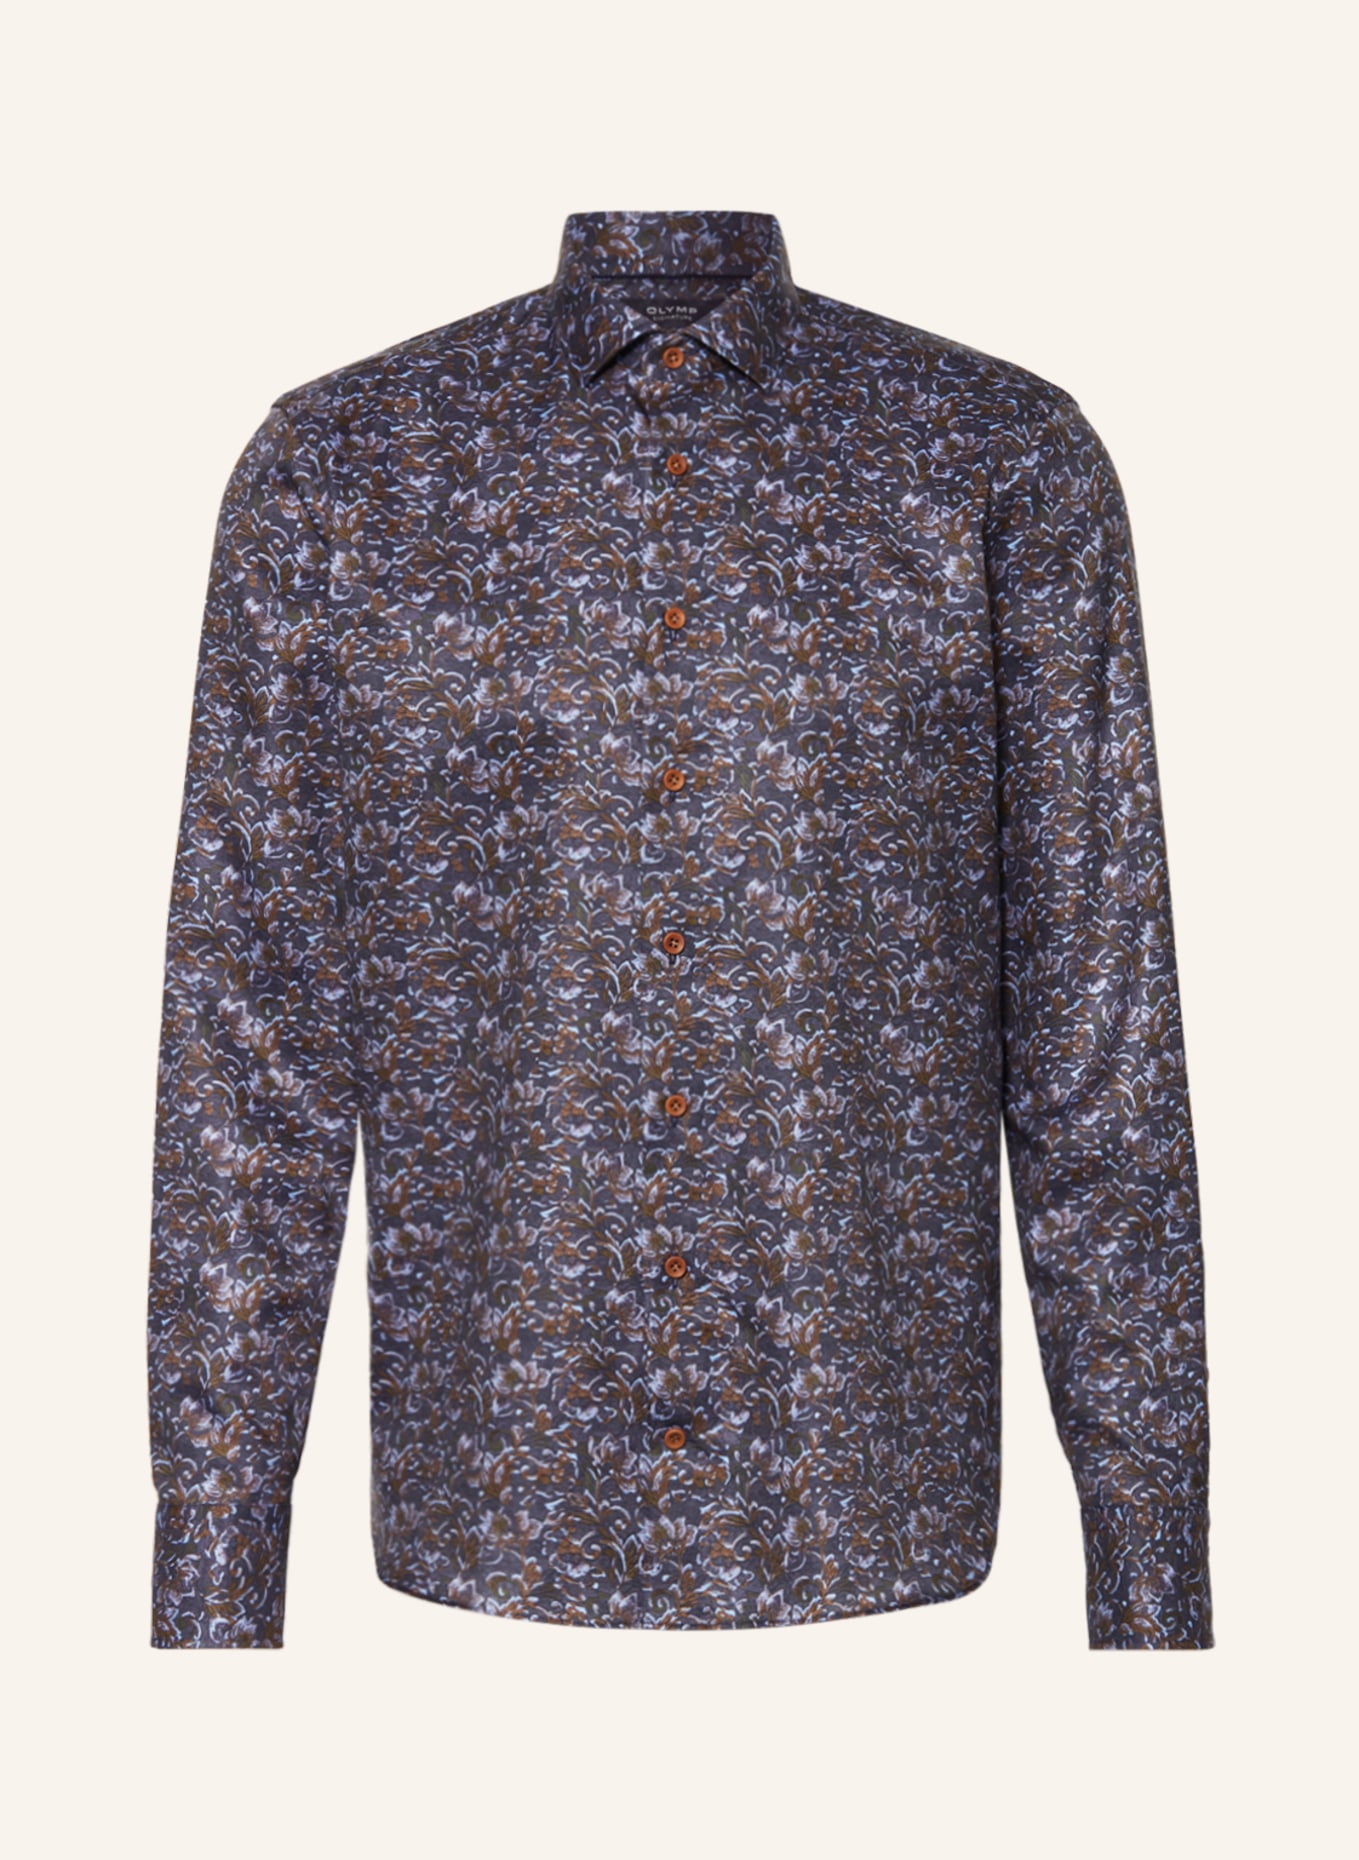 OLYMP SIGNATURE Hemd tailored fit, Farbe: DUNKELBLAU/ BRAUN/ HELLBLAU (Bild 1)